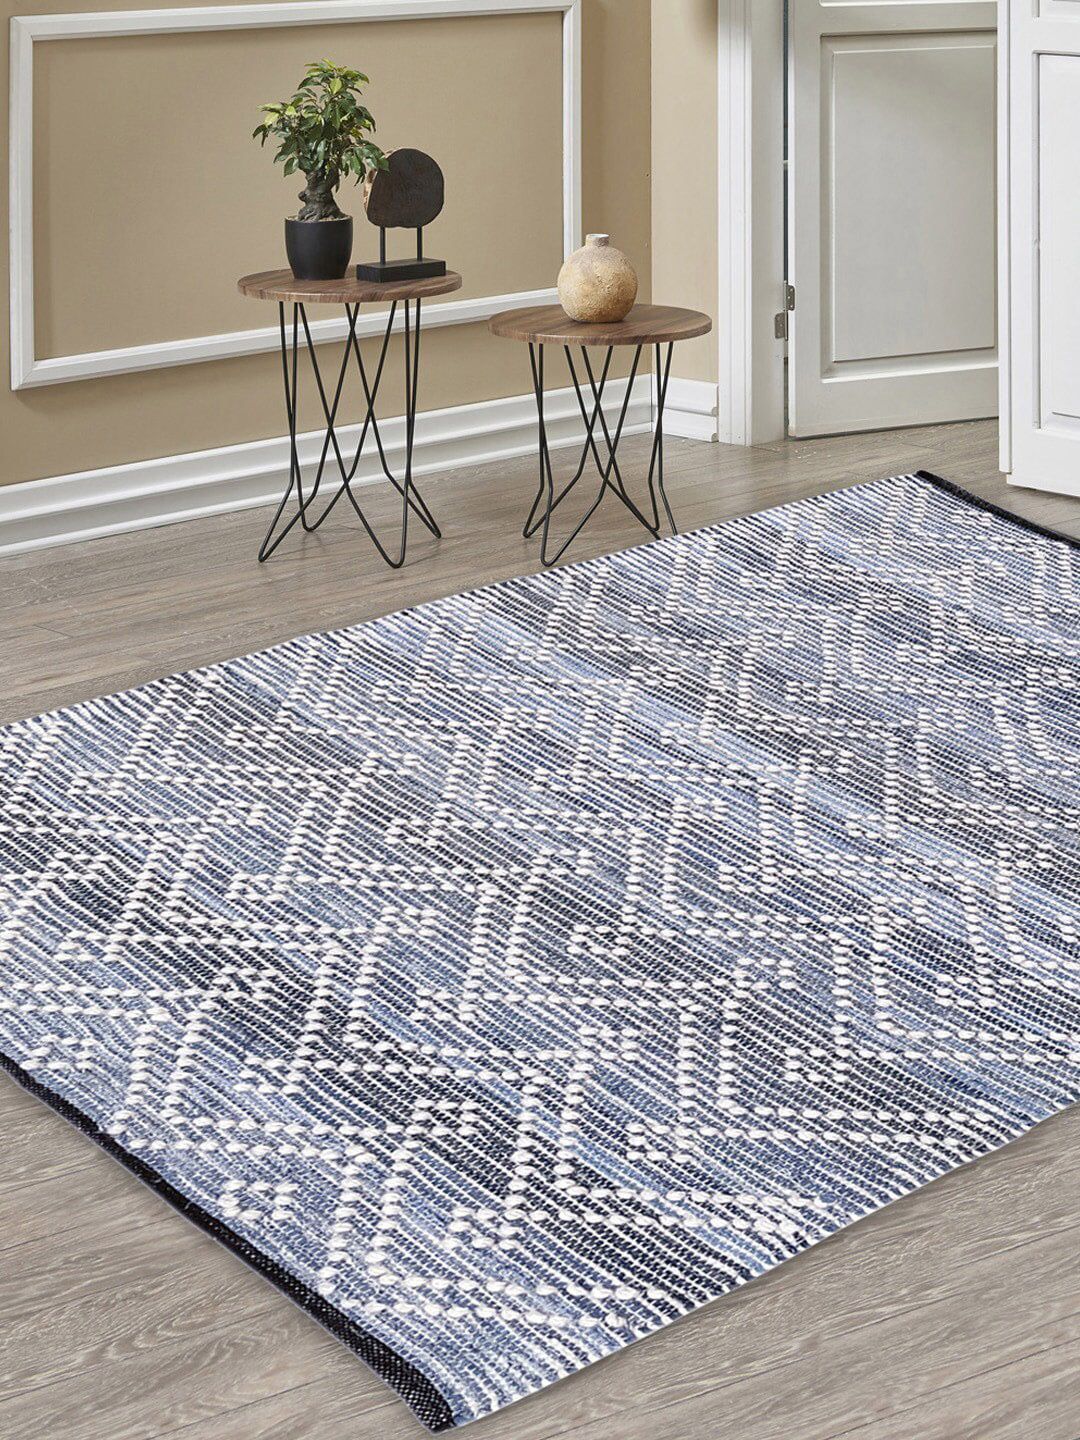 AVI Living Blue & White Woven Dhurrie Carpet Price in India